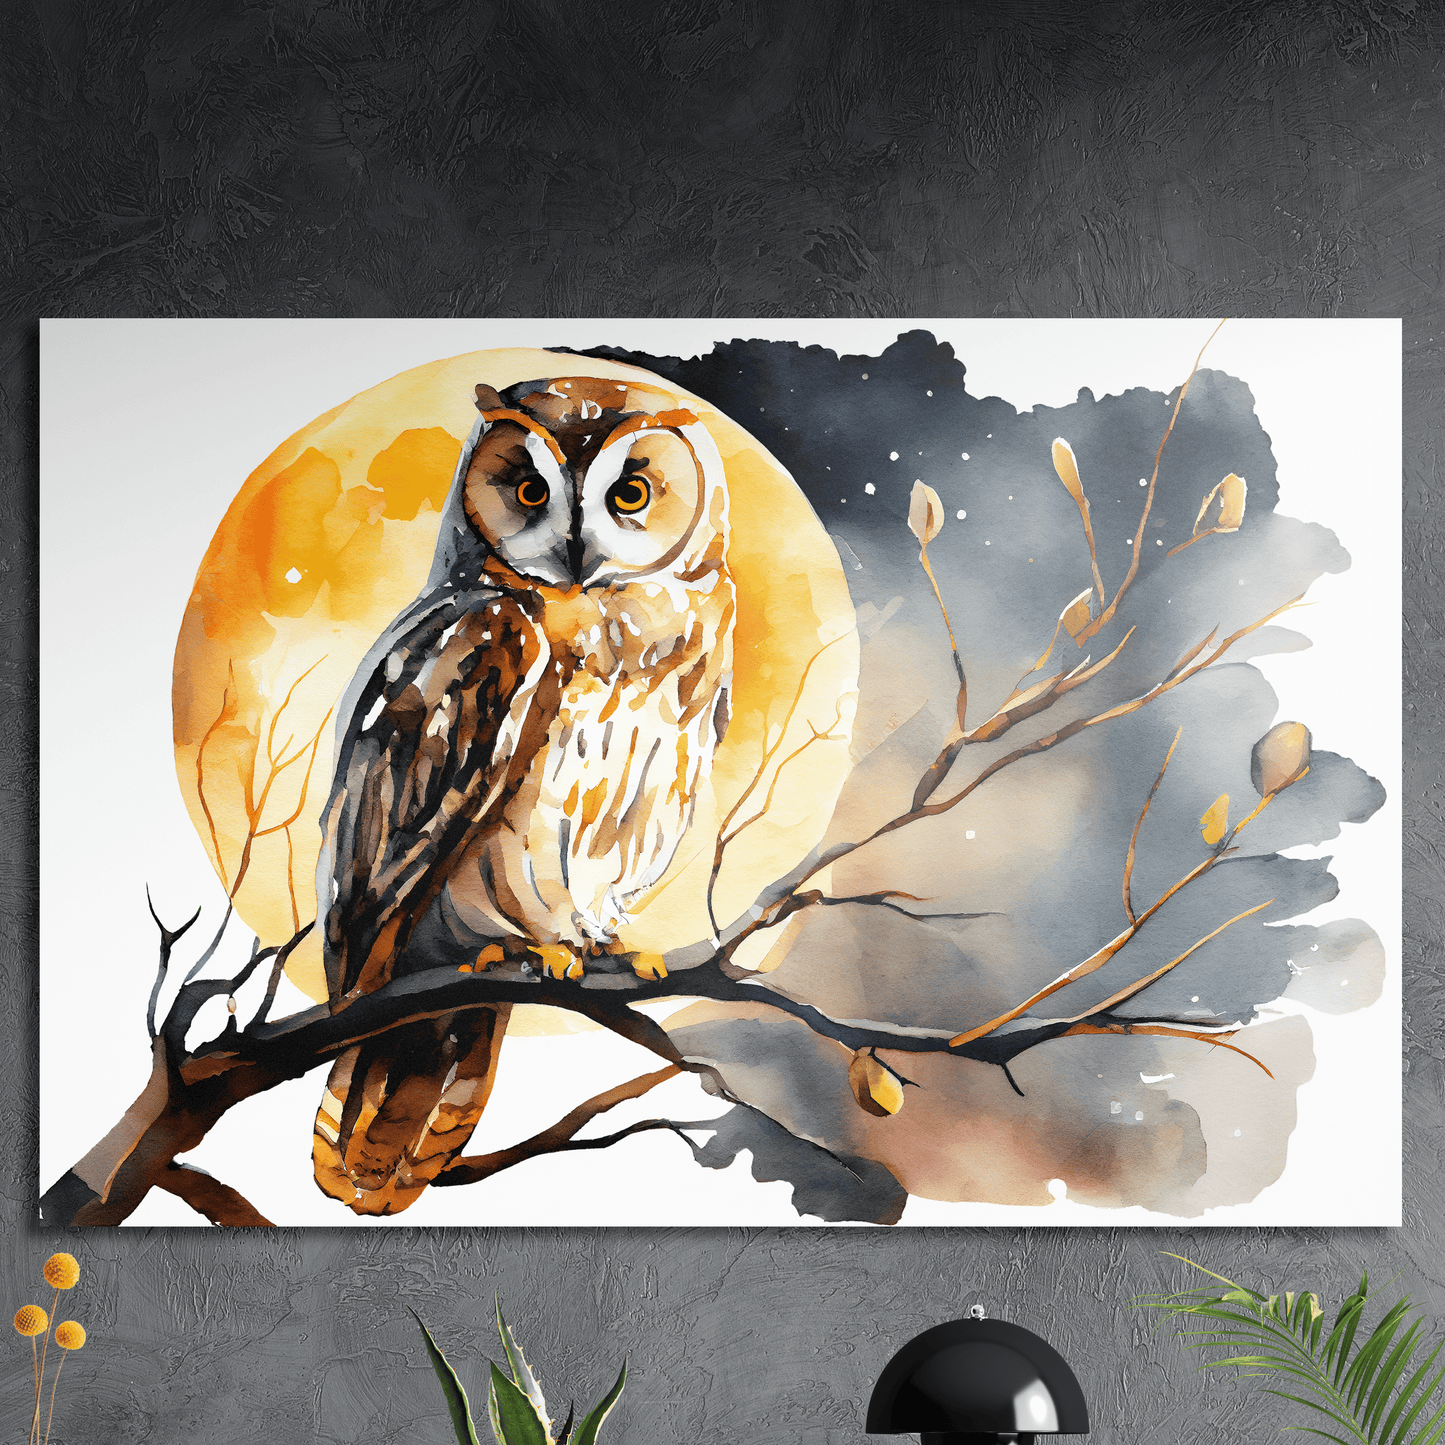 Moonlight Owl - Aquarell Wandbild - Querformat - Alu-Dibond - Detailansicht